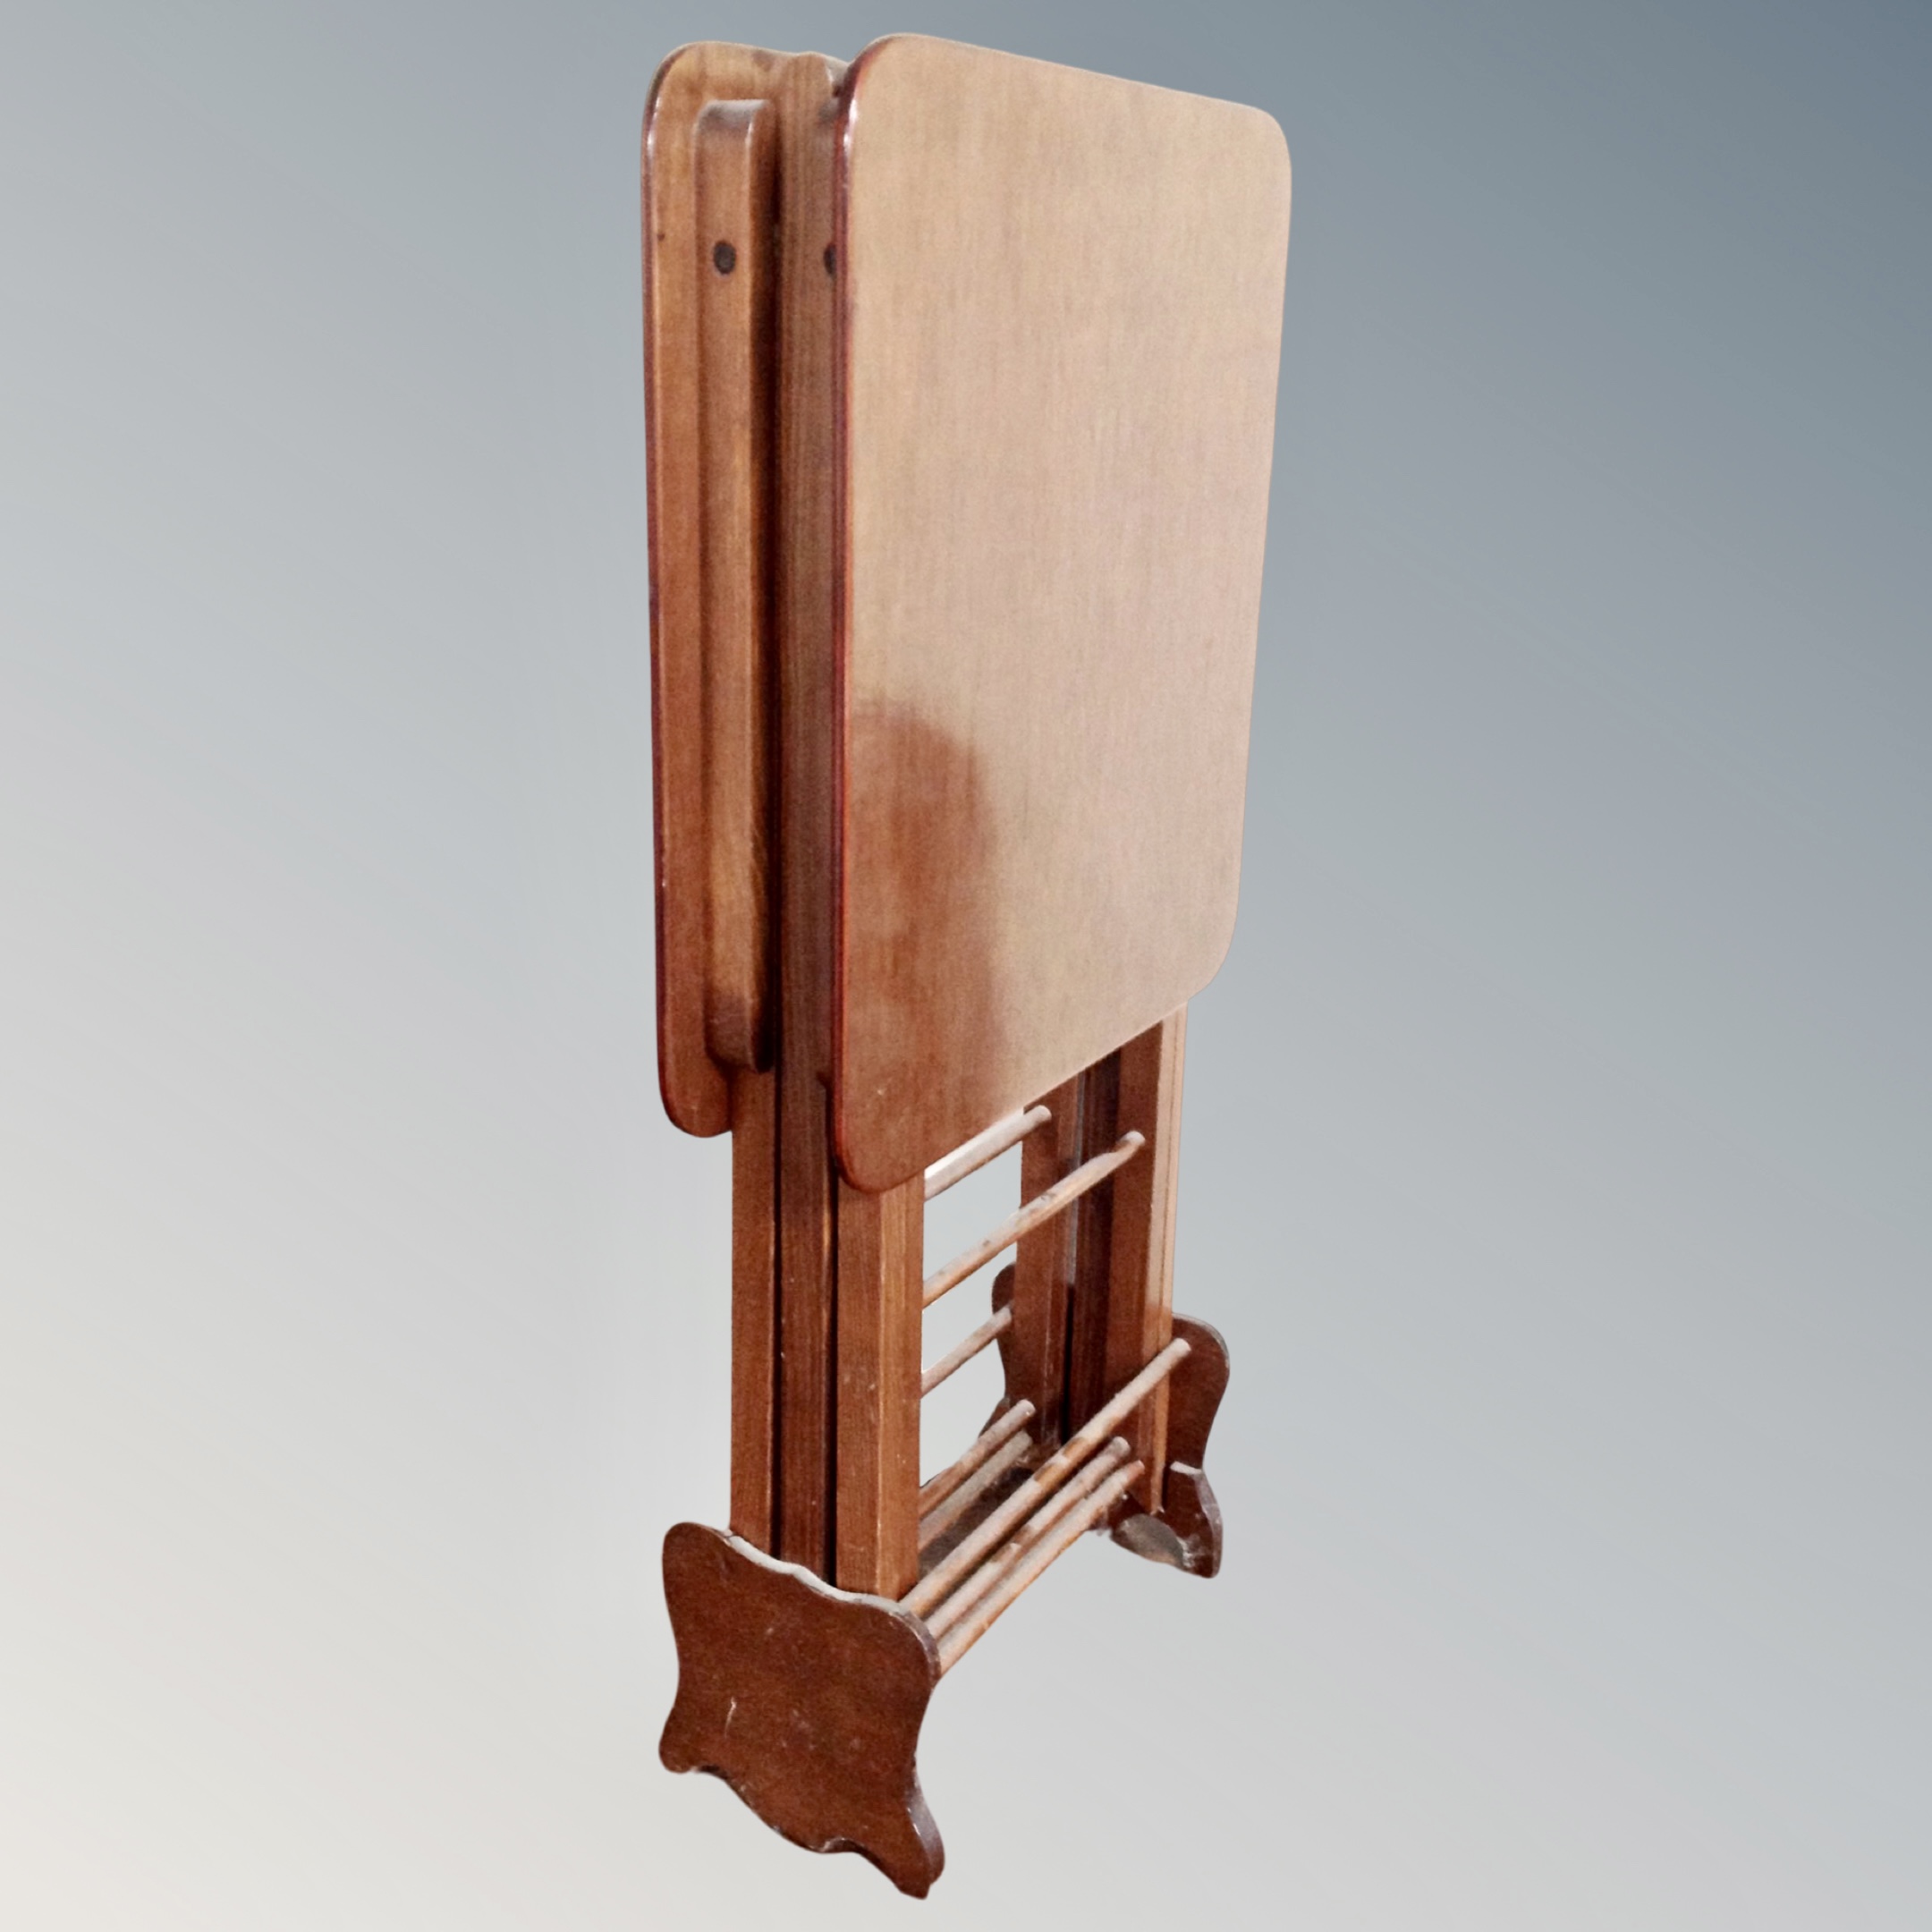 A mahogany effect folding table.